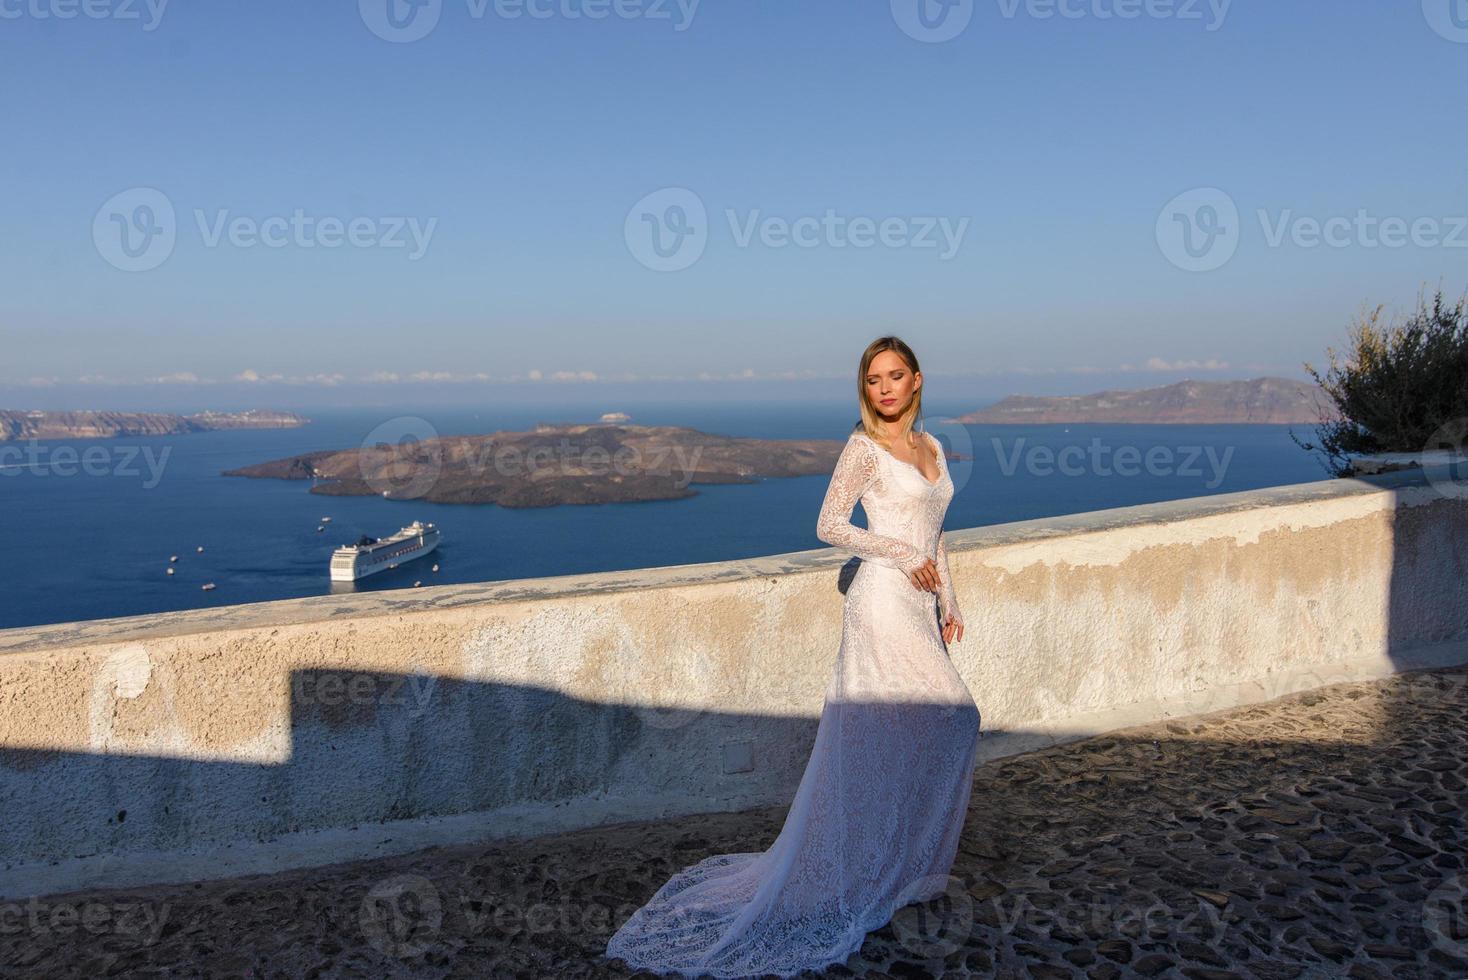 noiva linda em um vestido branco posando no contexto do mar mediterrâneo em thira, santorini. foto